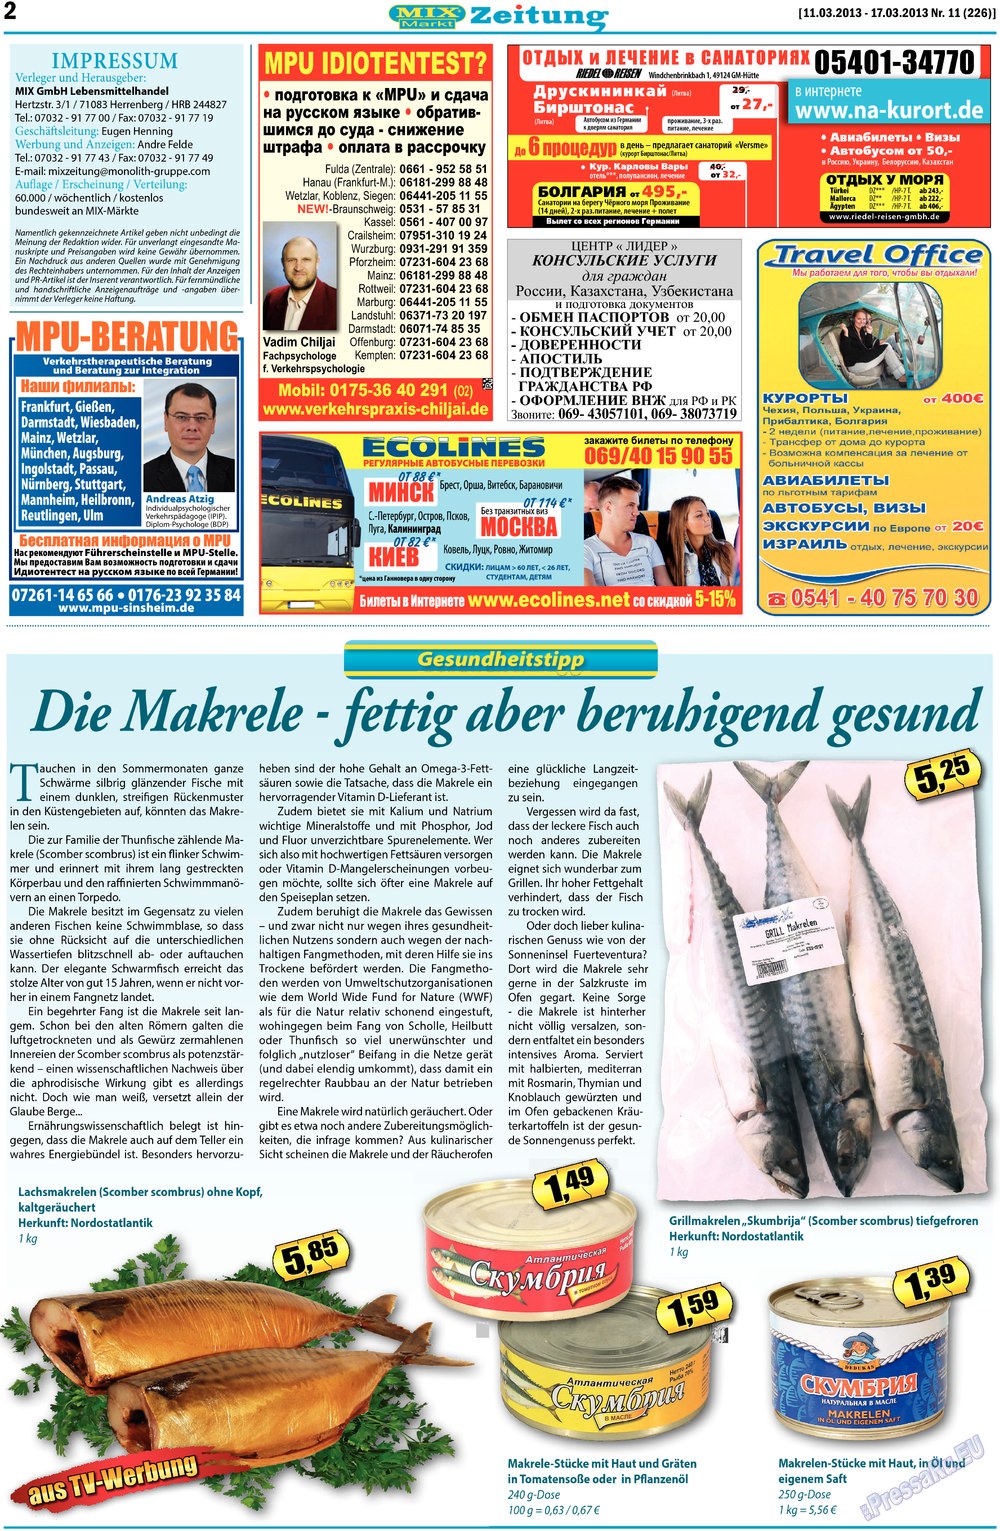 MIX-Markt Zeitung, газета. 2013 №11 стр.2